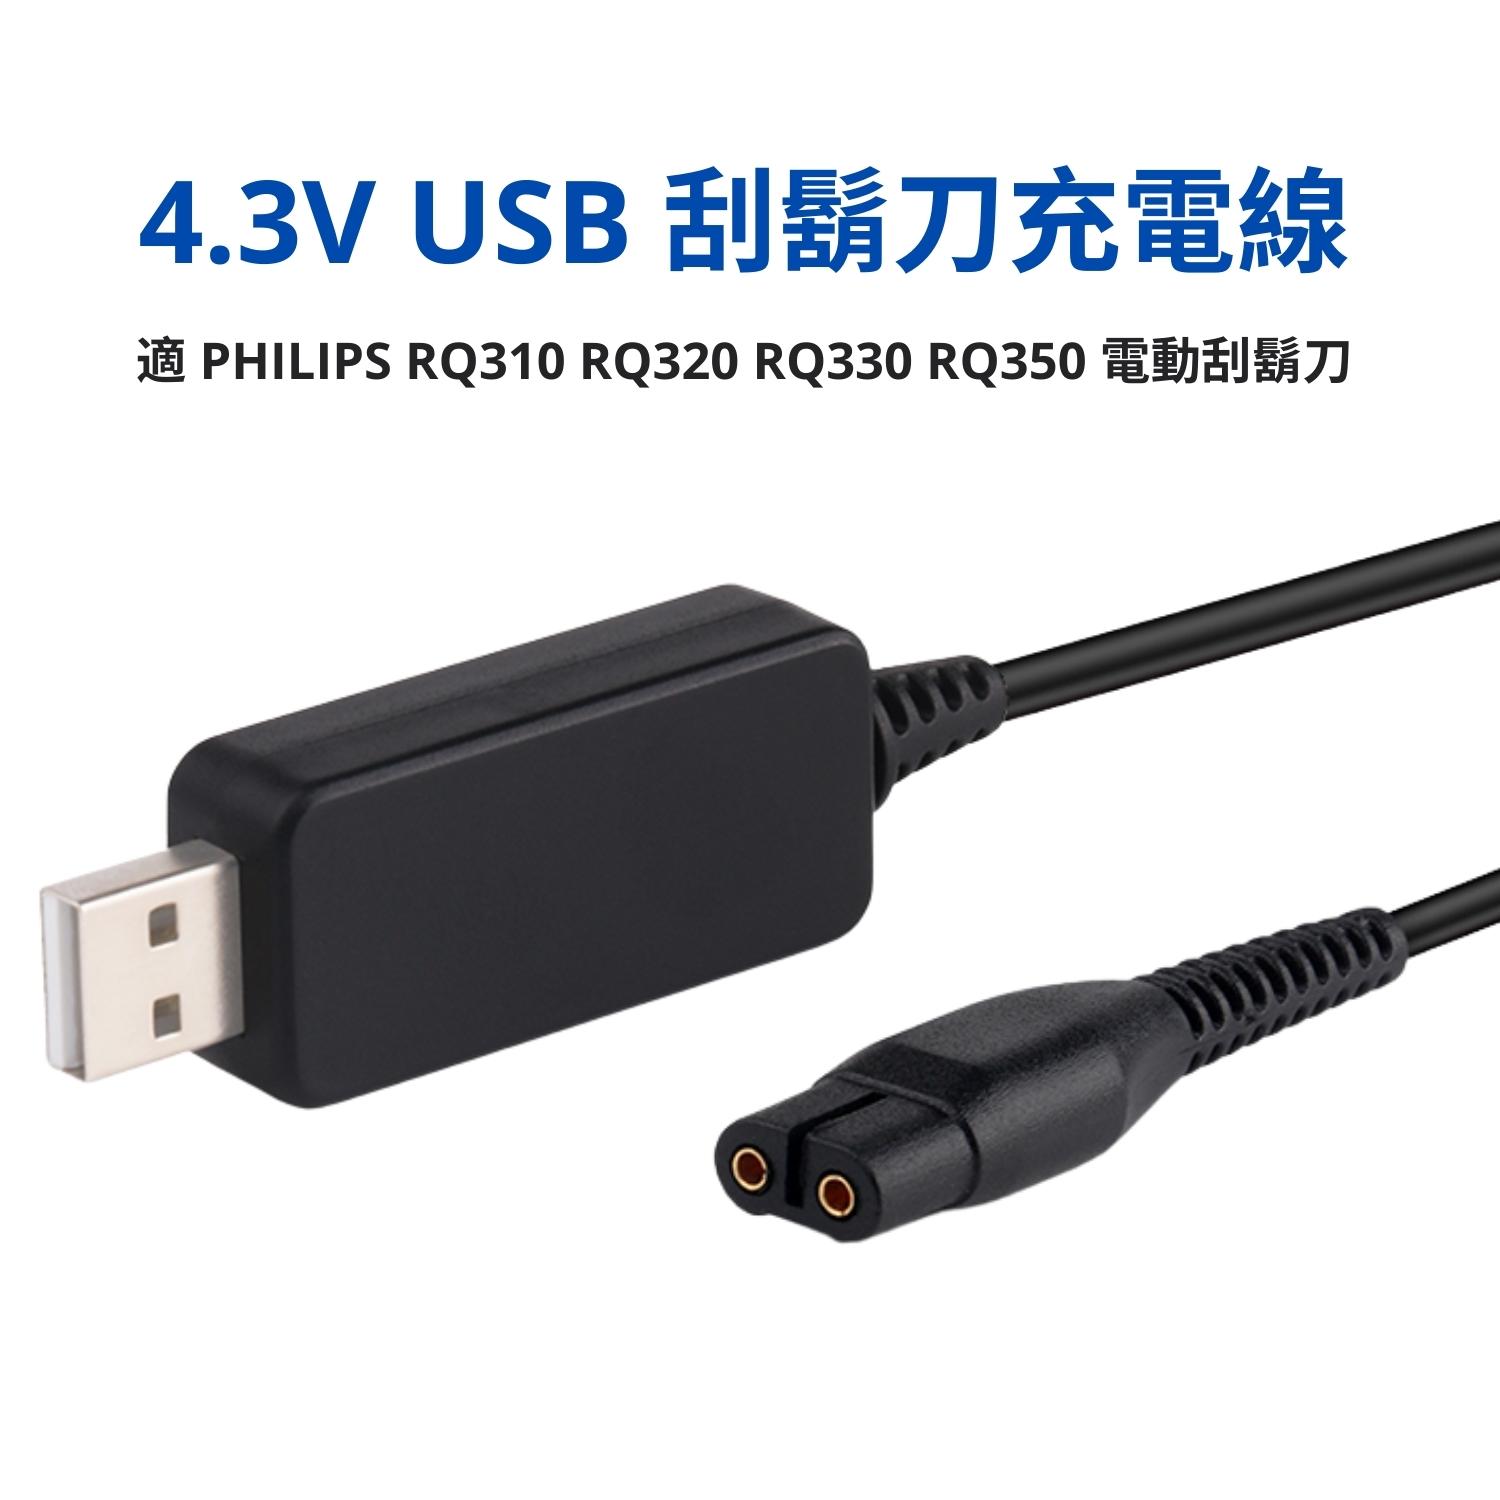 [少量現貨] 4.3V 電動刮鬍刀 USB 充電線 1.2m 適 PHILIPS RQ310 RQ320 RQ330 RQ350 飛利浦電鬍刀 USB BKS-001_PP1